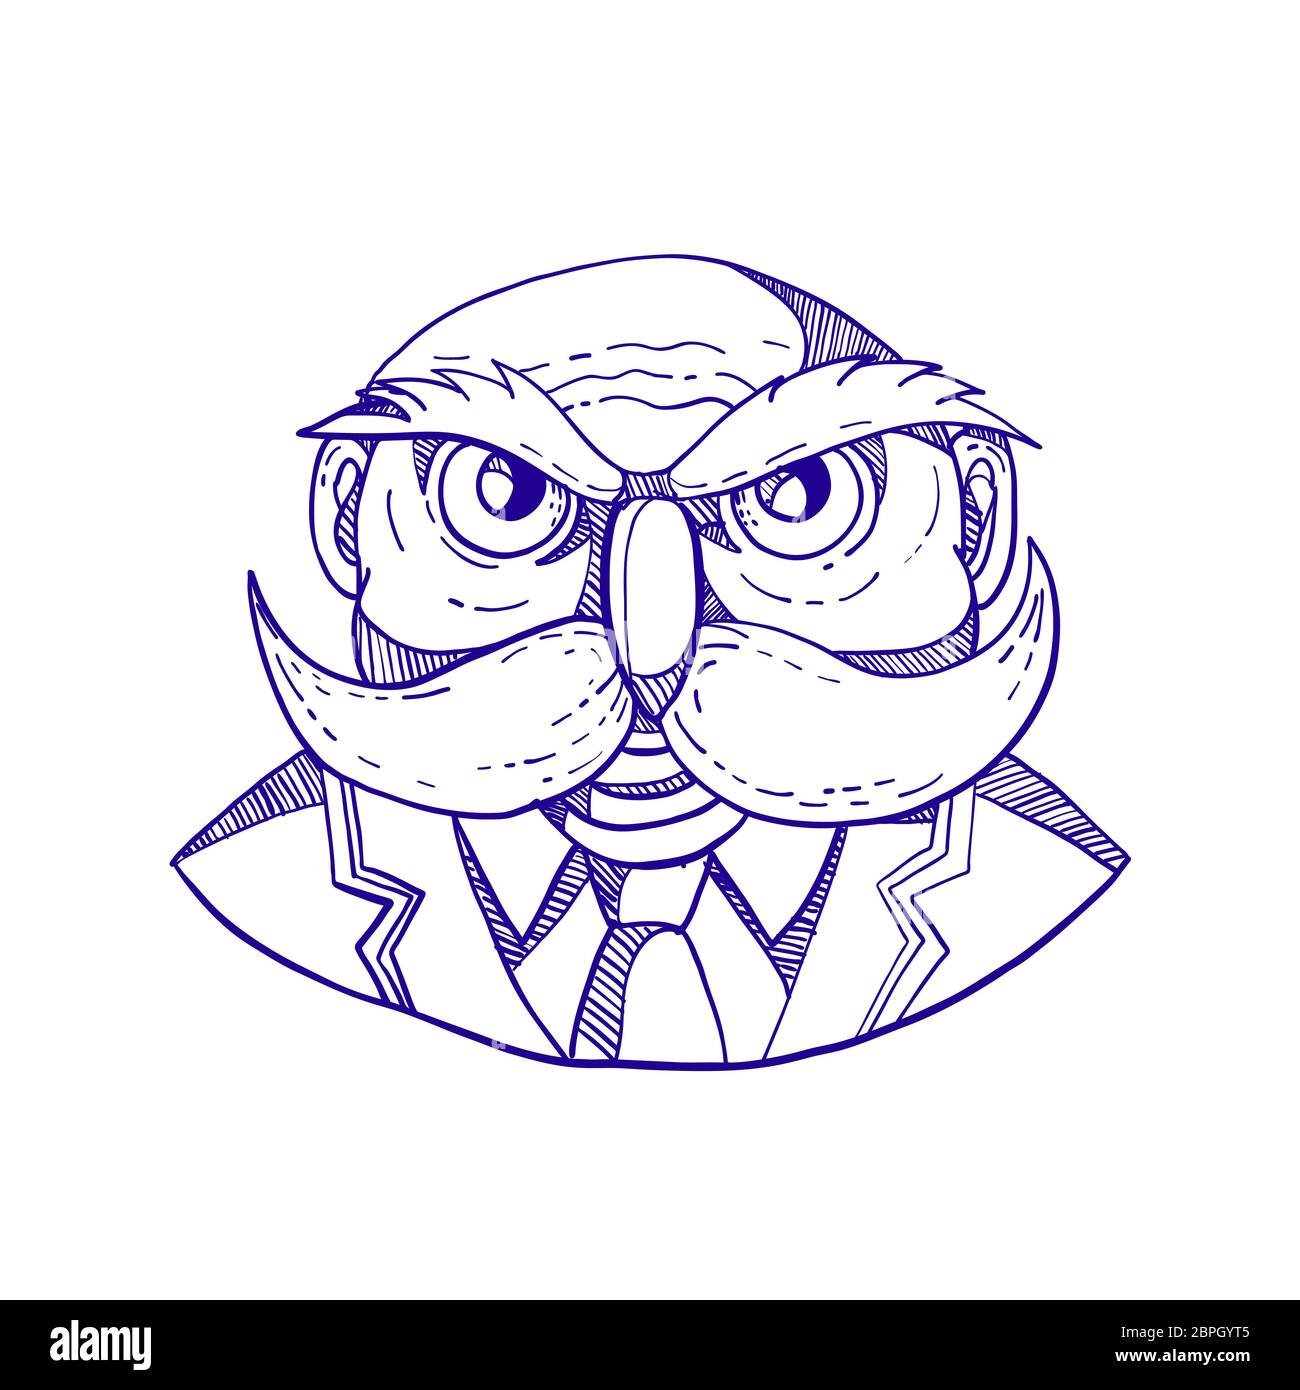 Doodle arte illustrazione di un arrabbiato vecchio uomo calvo che appare come un gufo con baffuto cappotto e cravatta visto dal lato anteriore fatto in caricatura stile. Foto Stock